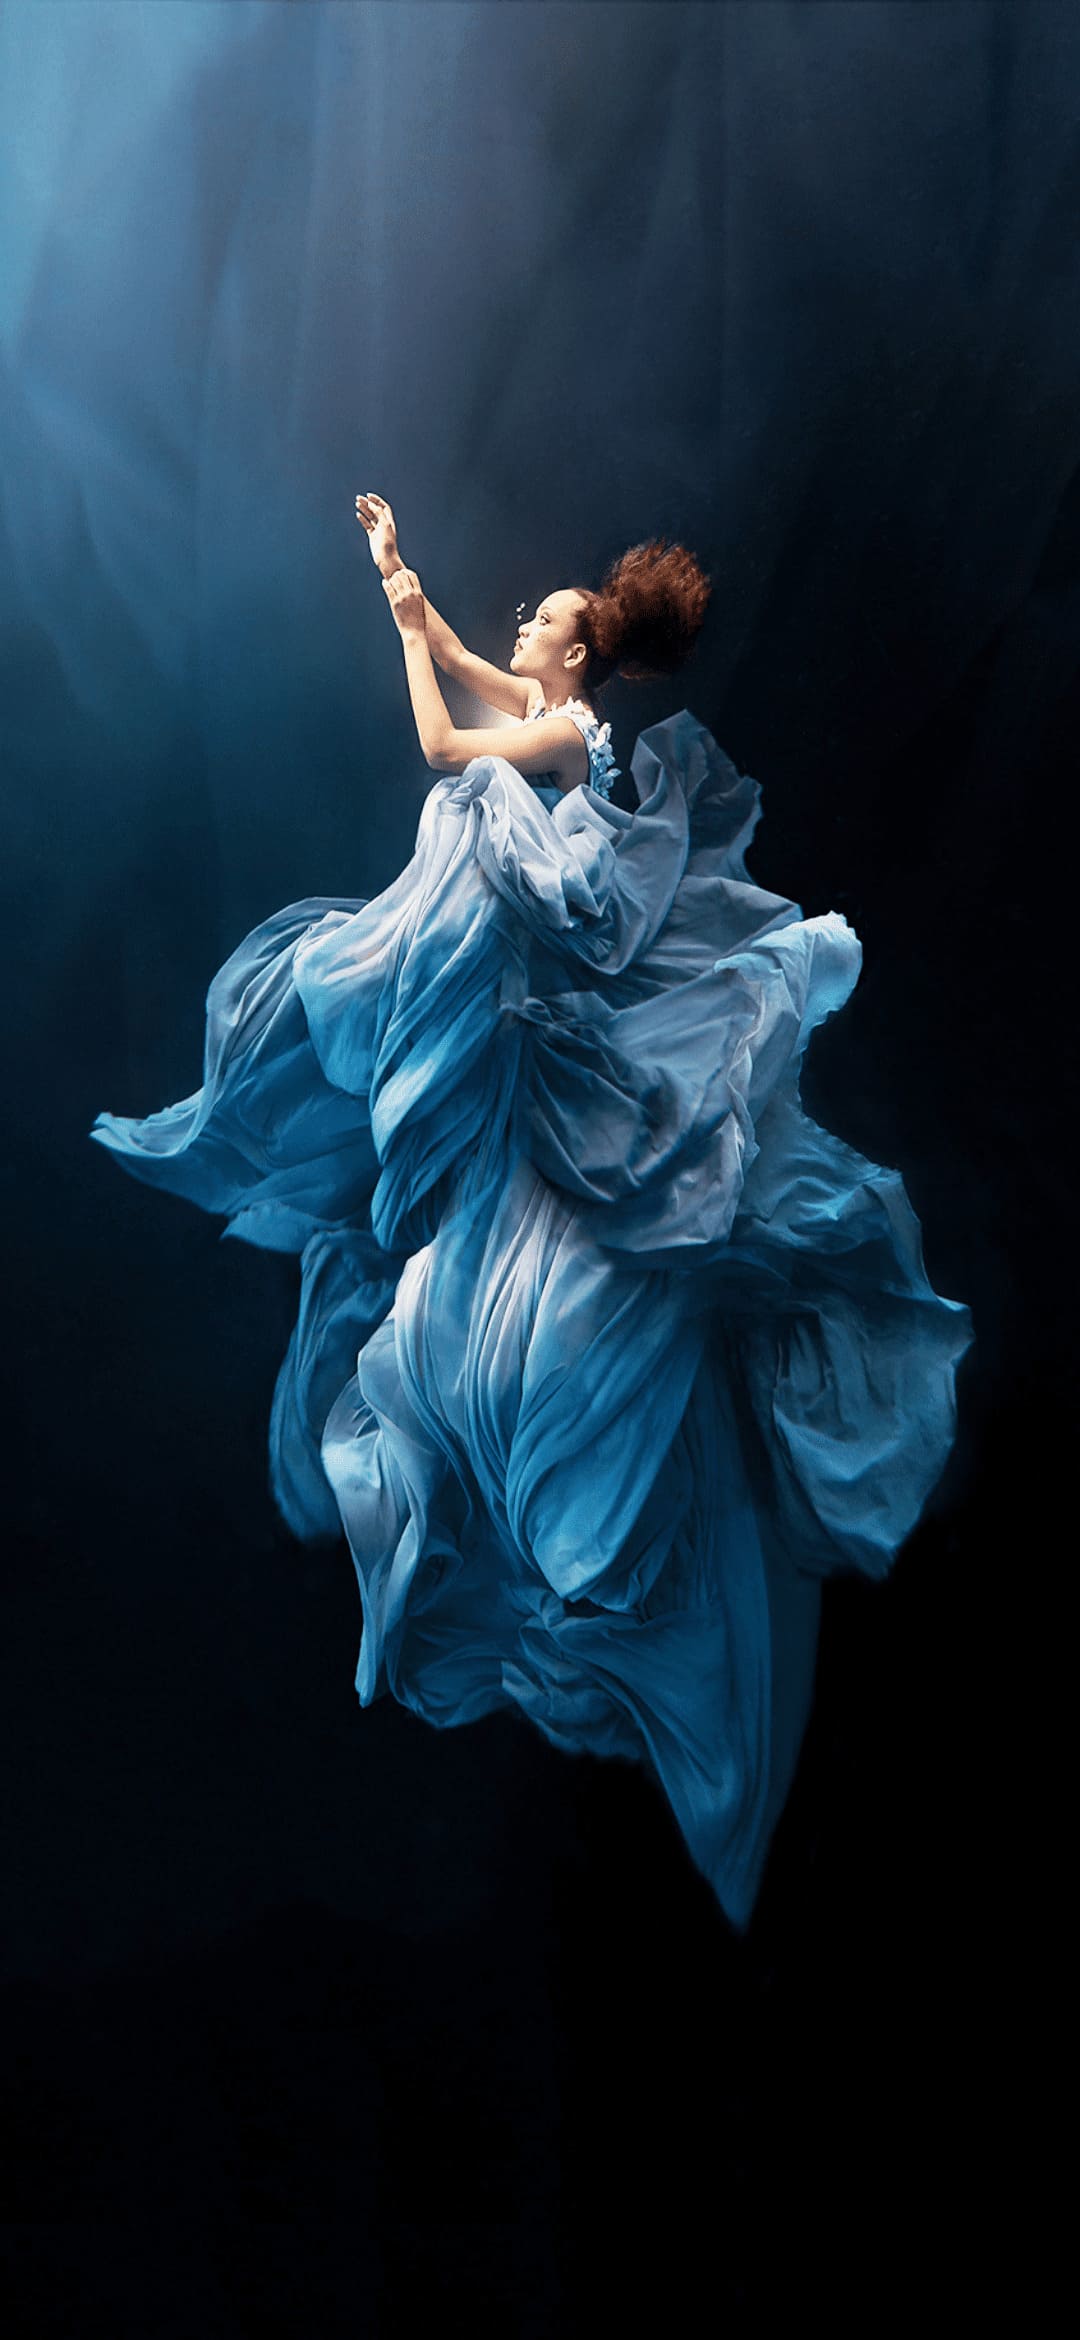 for honor wallpaper,blue,dancer,dance,flamenco,modern dance